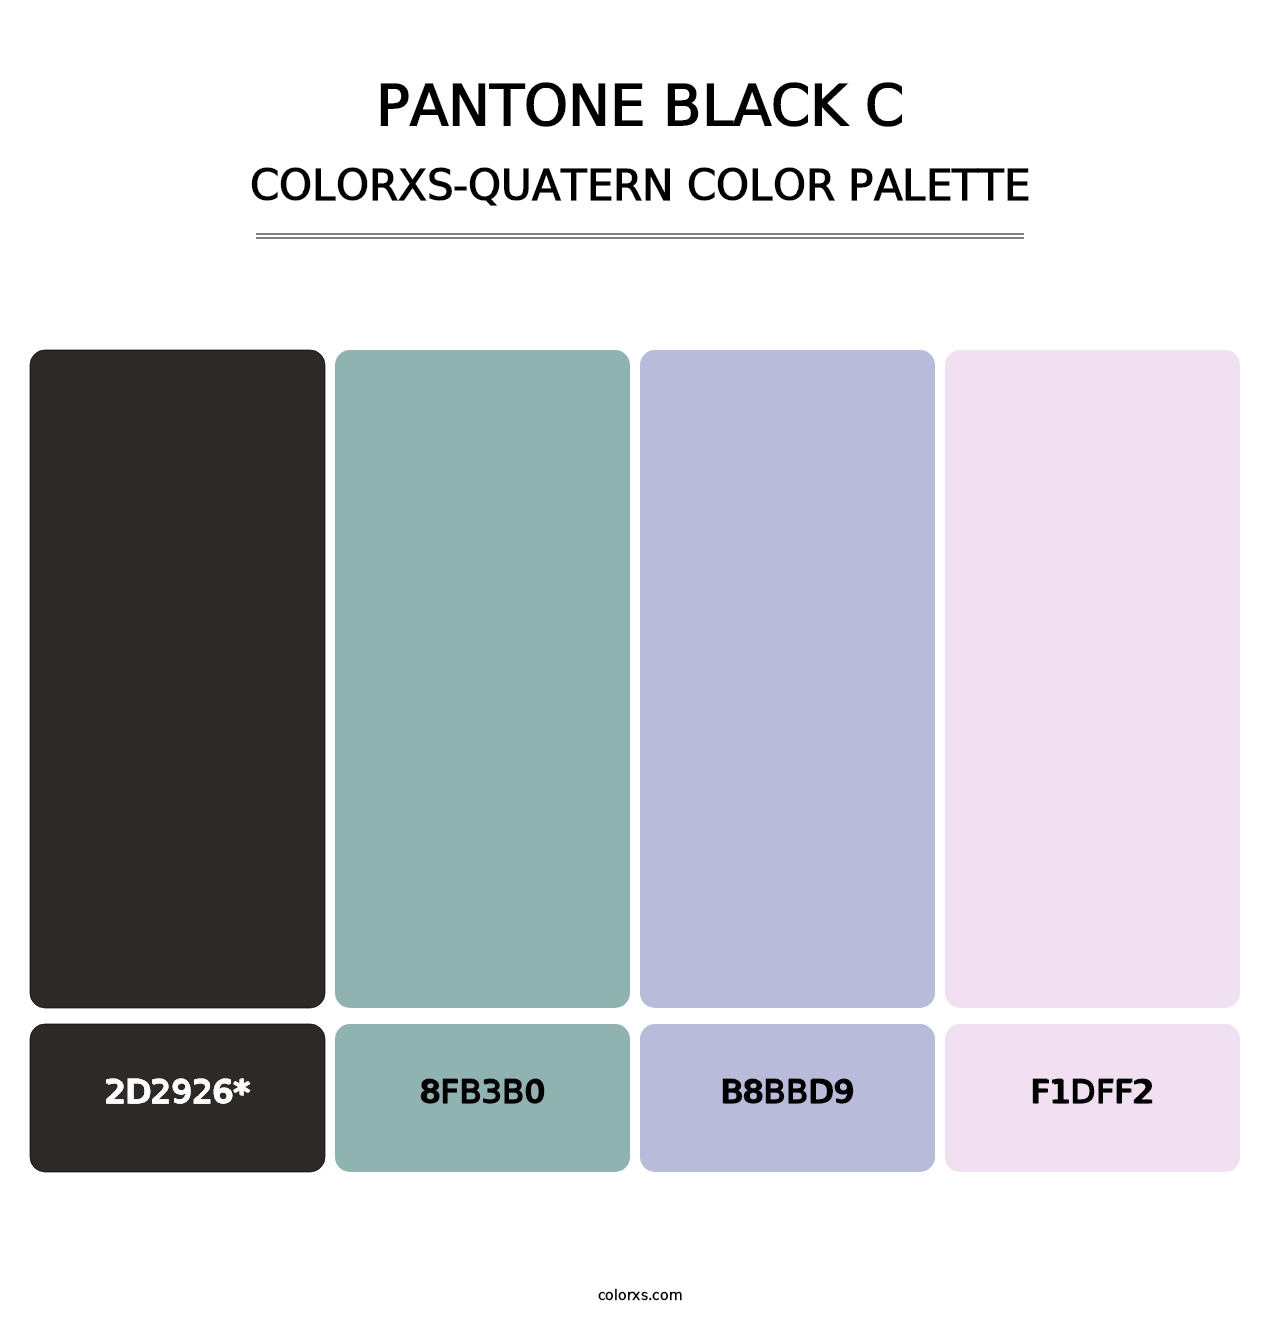 PANTONE Black C - Colorxs Quatern Palette